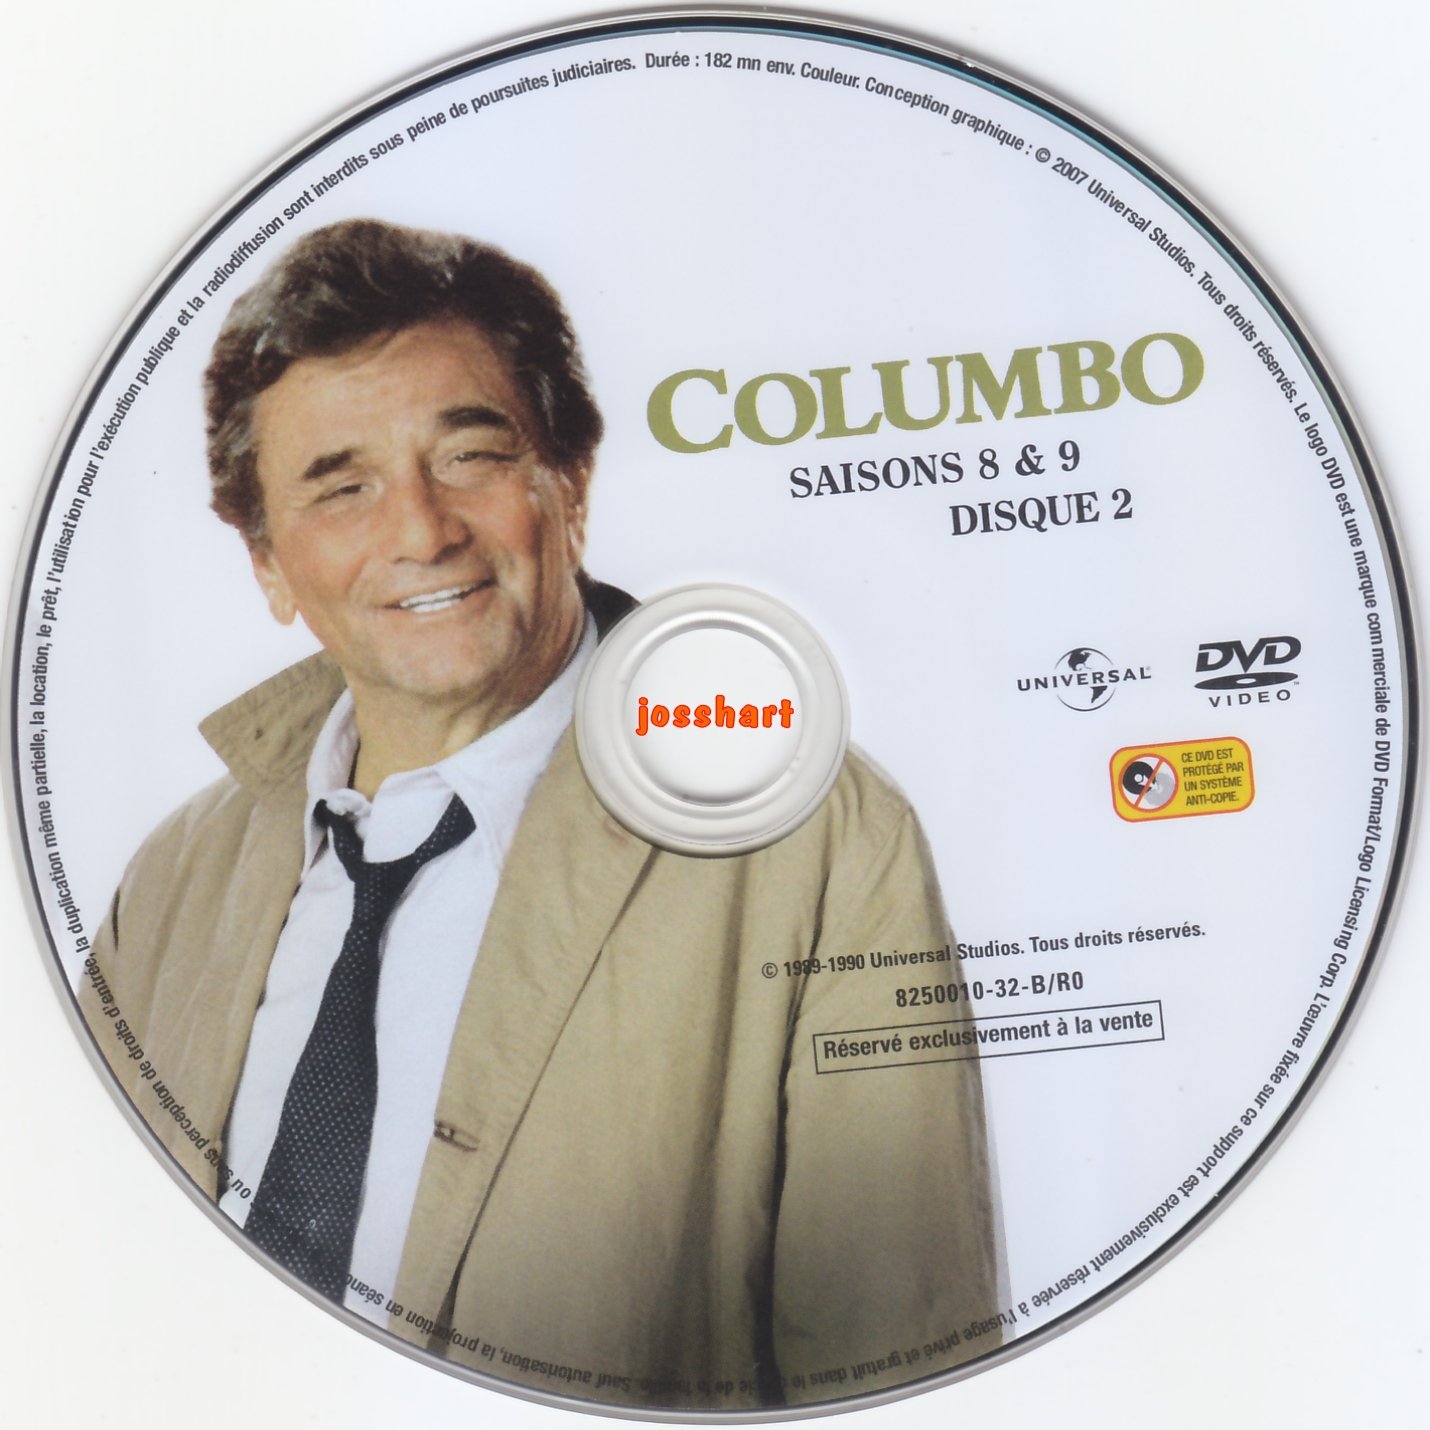 Columbo S8 et 9 DISC2